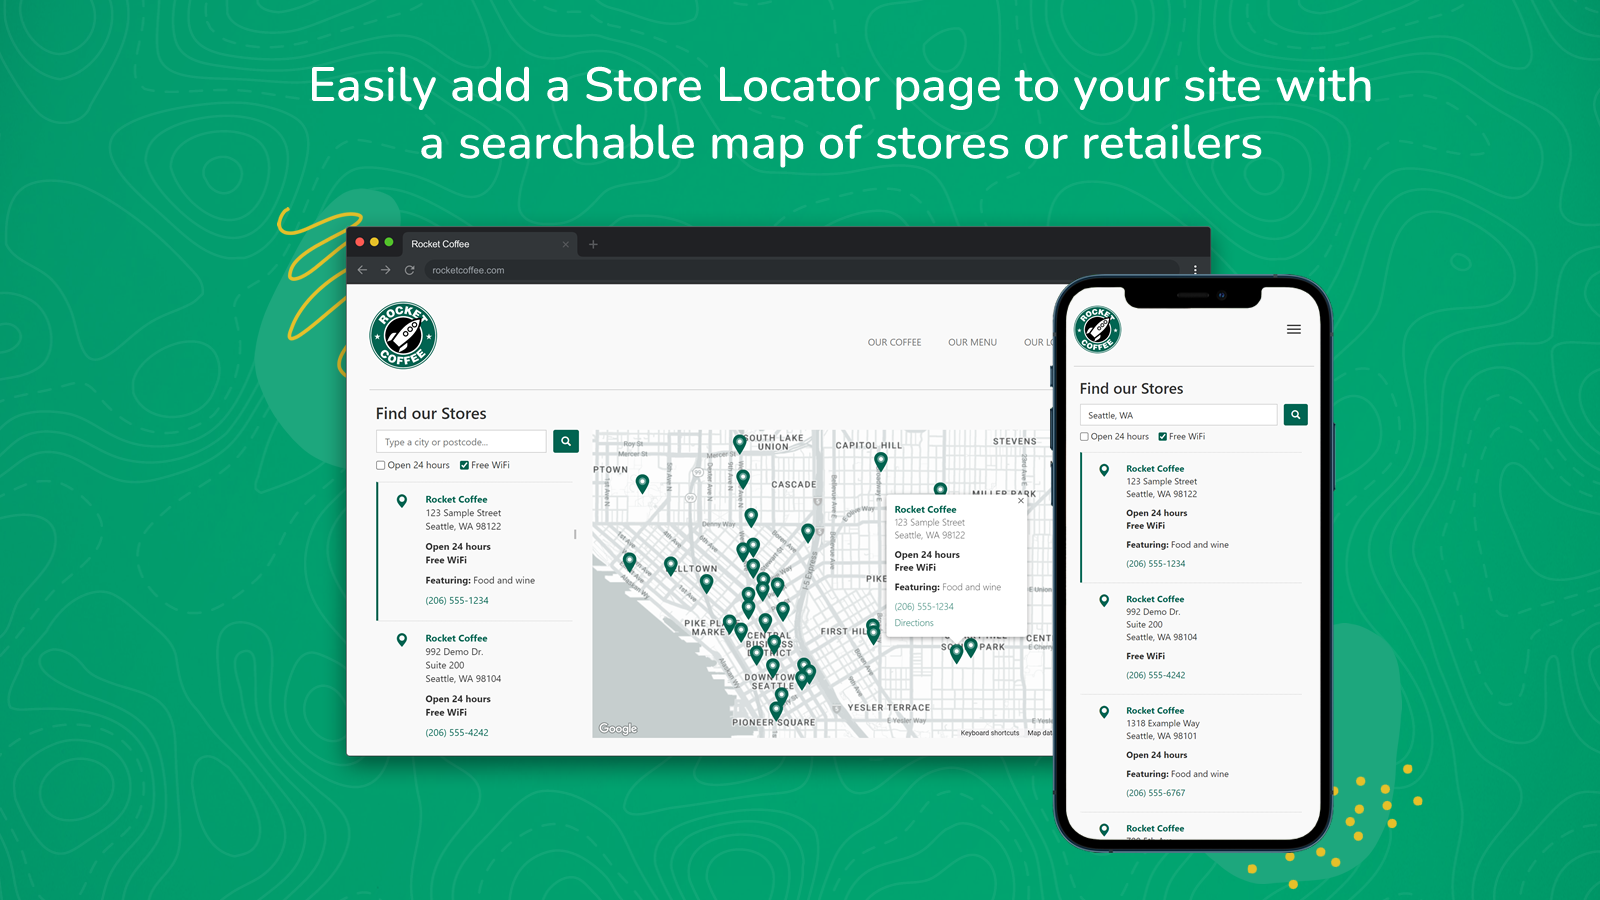 Voeg eenvoudig een doorzoekbare winkel/retailer/dealerkaart toe aan uw site